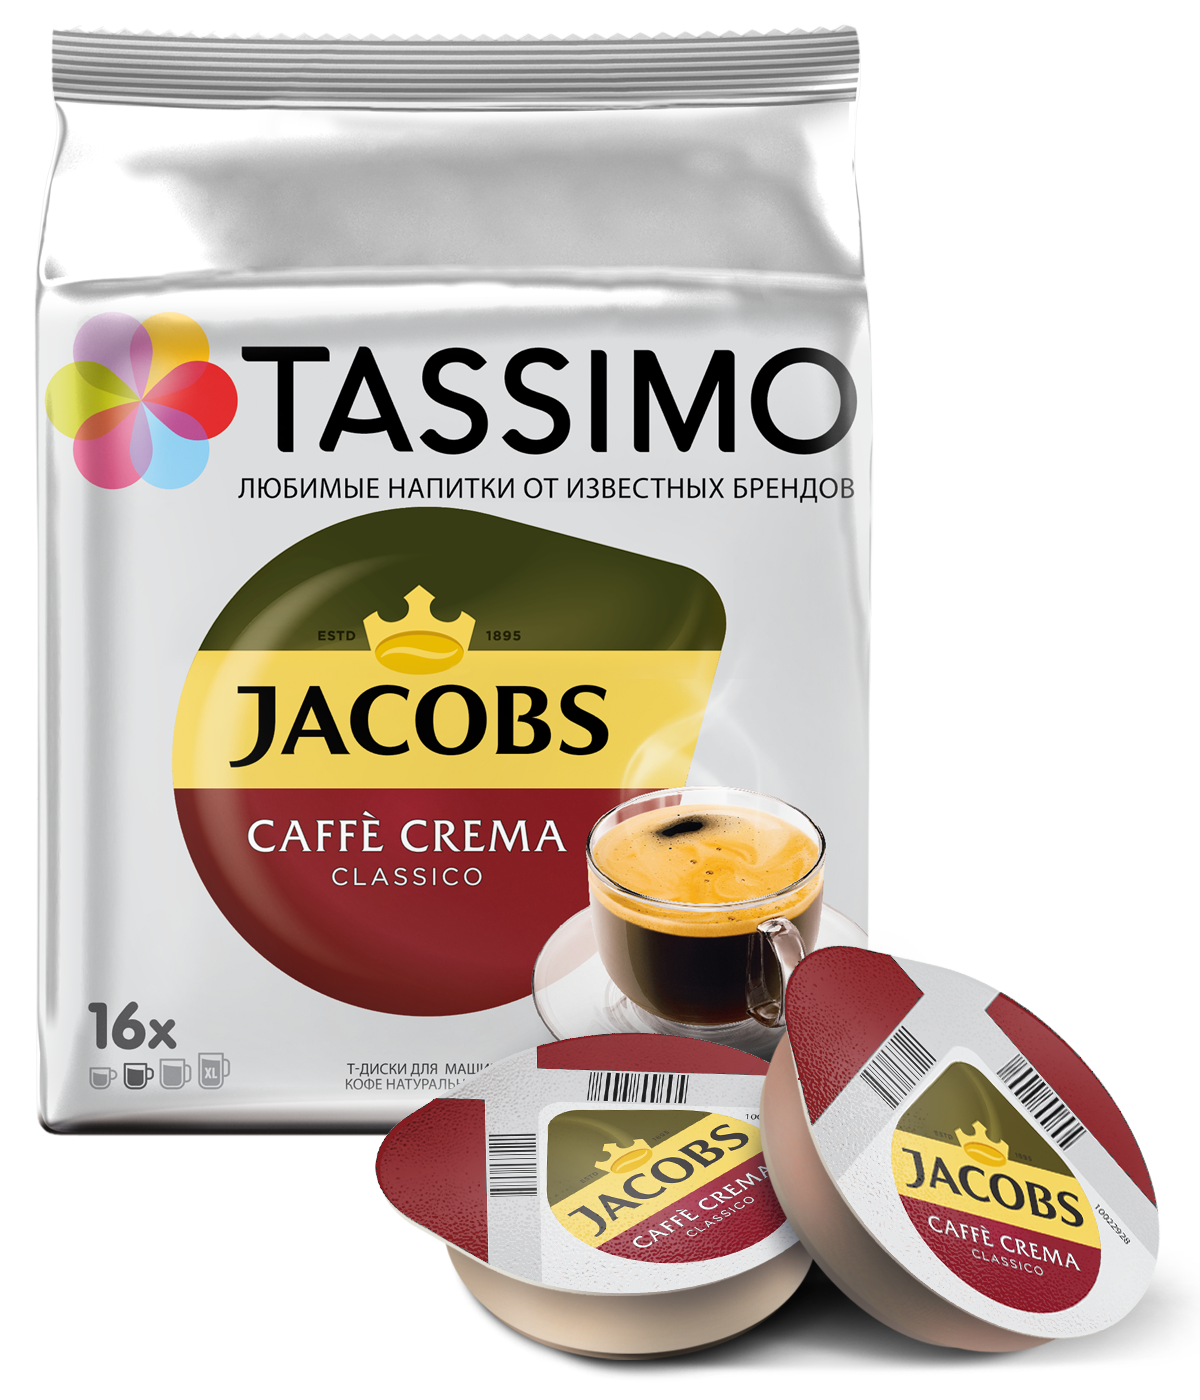 фото Кофе в капсулах tassimo jacobs caffe crema 16 порций